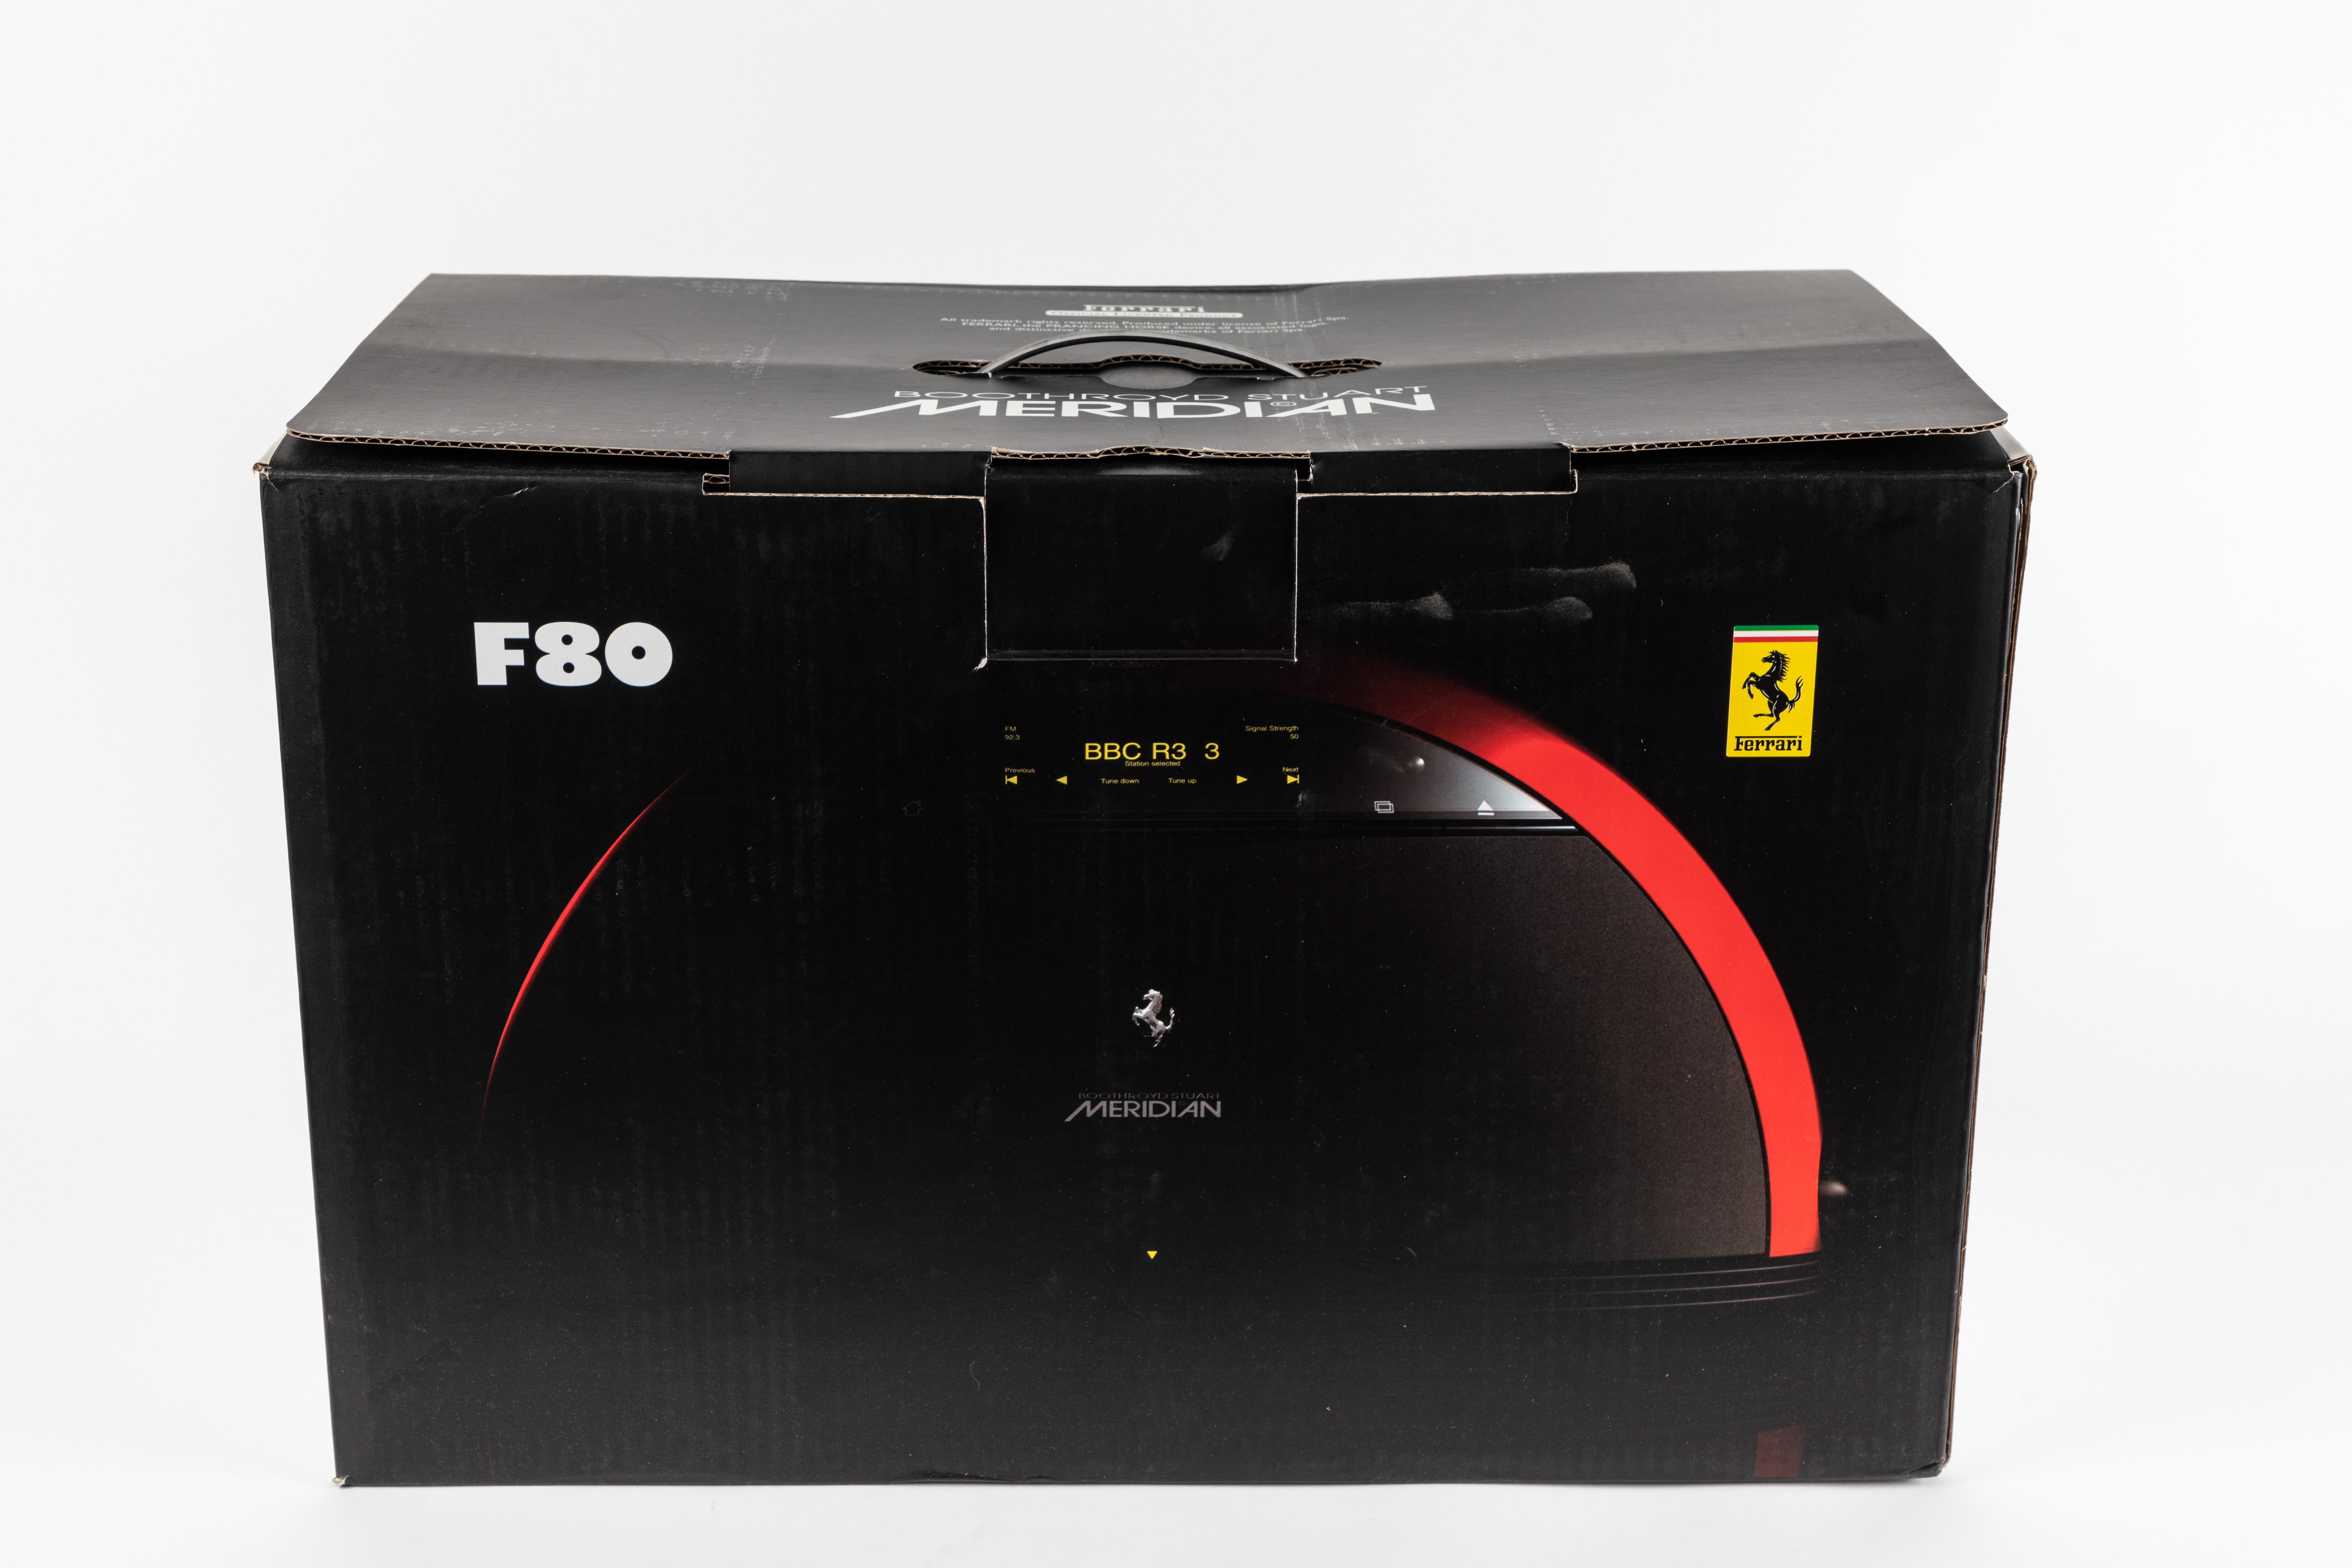 Ferrari/Meridian F80 Stereo System 3